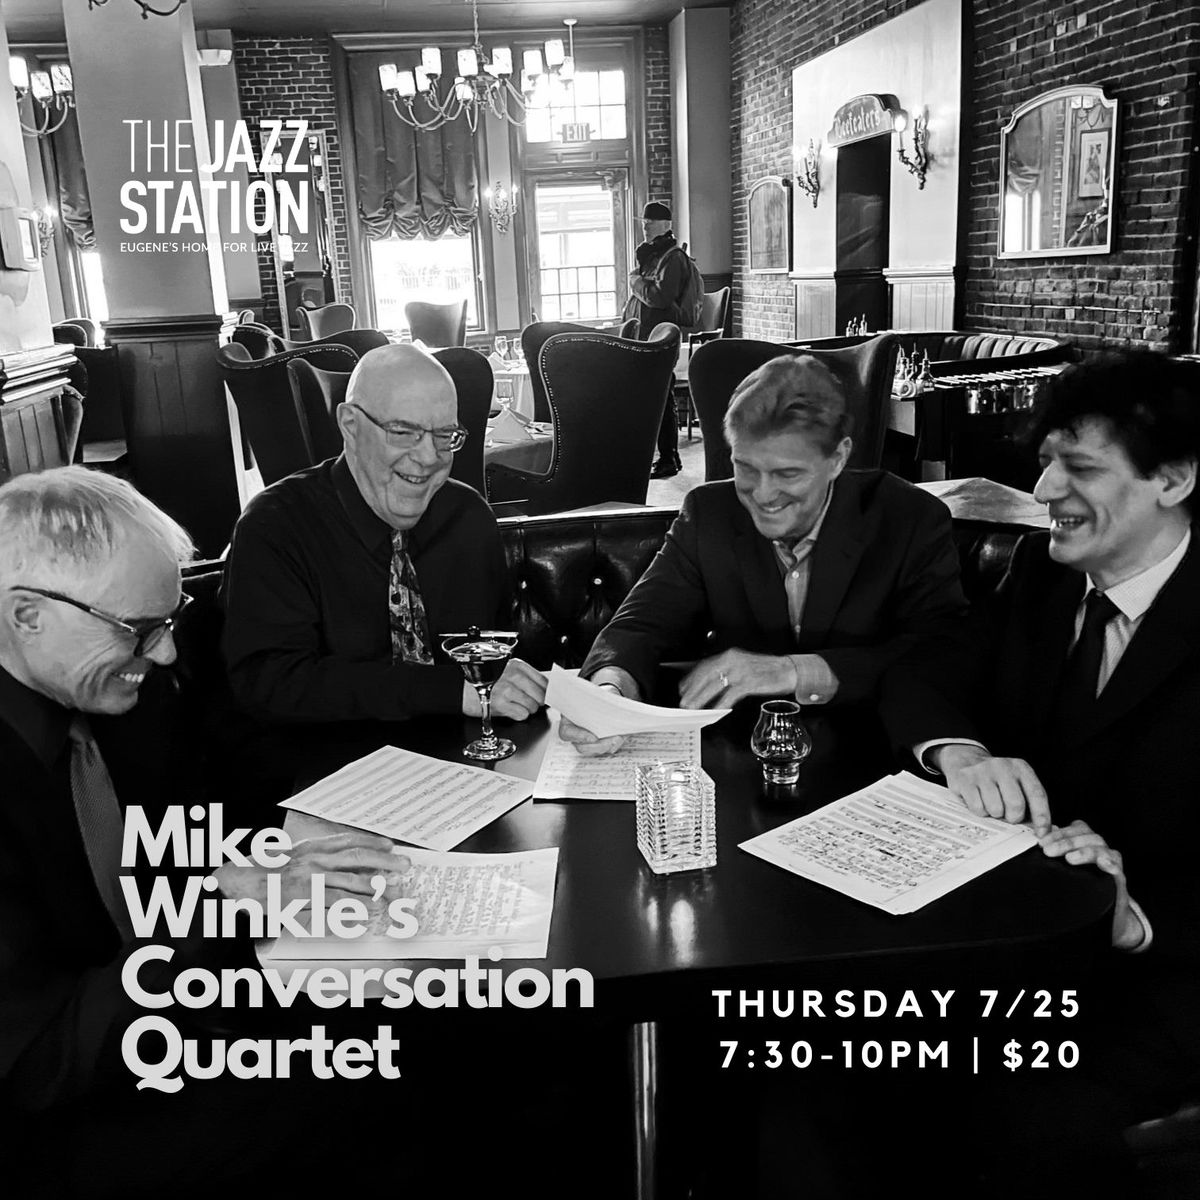 Michael Winkle's Conversation Quartet